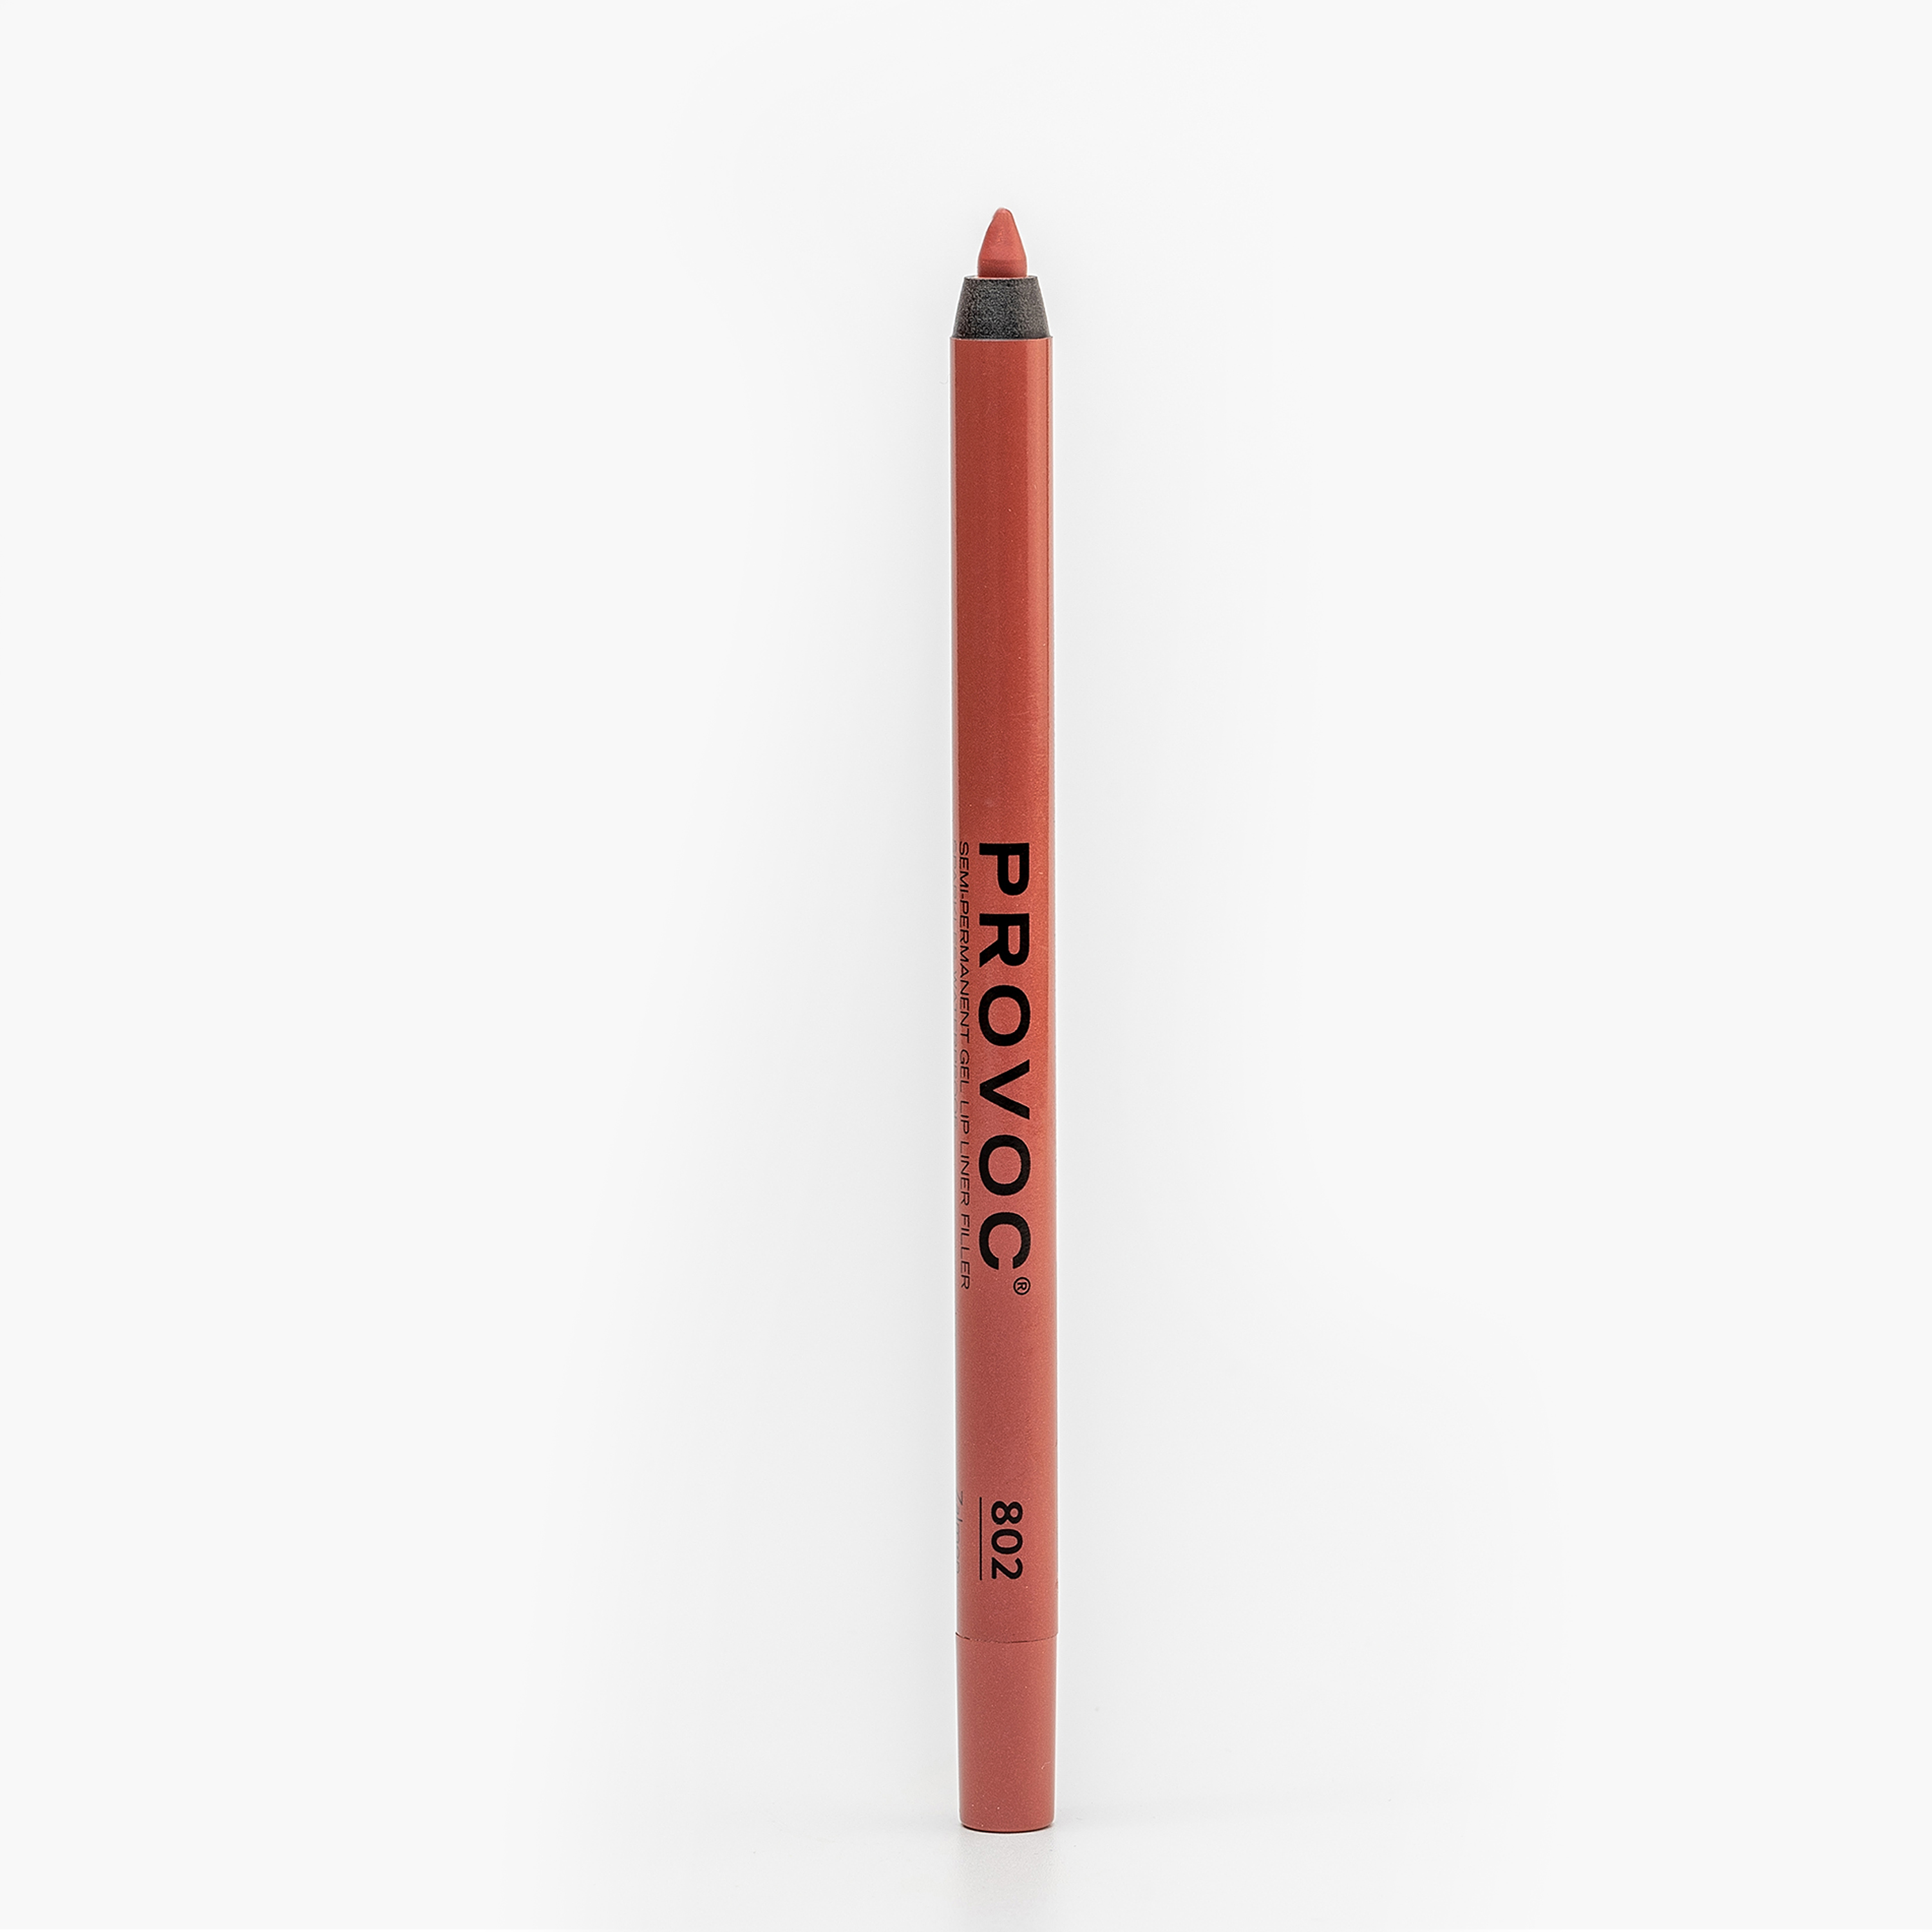 Карандаш для губ PROVOC Gel Lip Liner гелевый, №802 Zalmon персиковый нюд, 1,2 г карандаш для губ art visage lip liner 1 3 гр тон 48